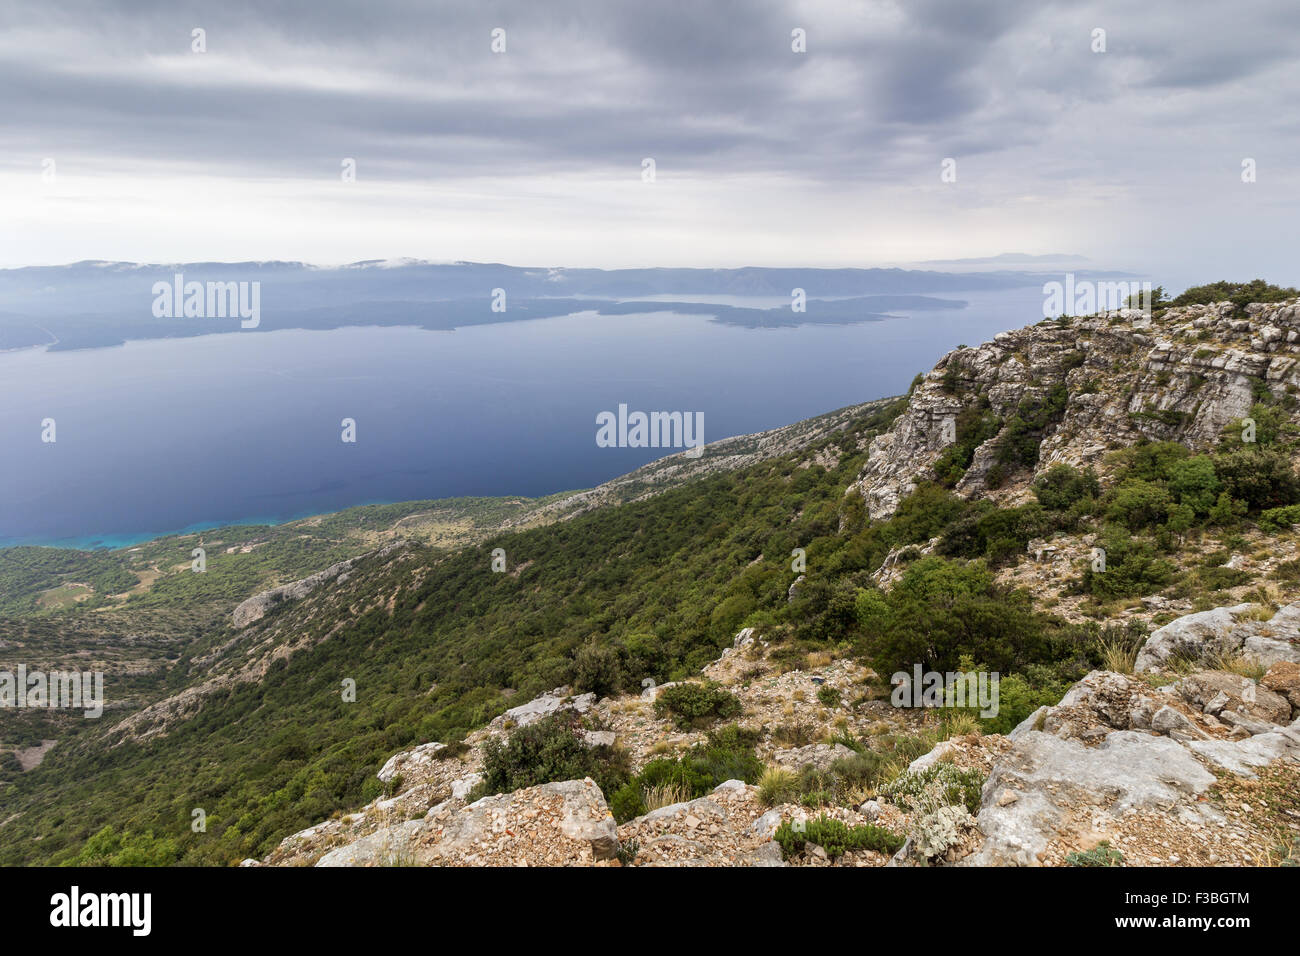 Ausblick vom Gipfel des Berges Vidova Gora auf der Insel Brac in Richtung Insel Hvar in Kroatien. Stockfoto